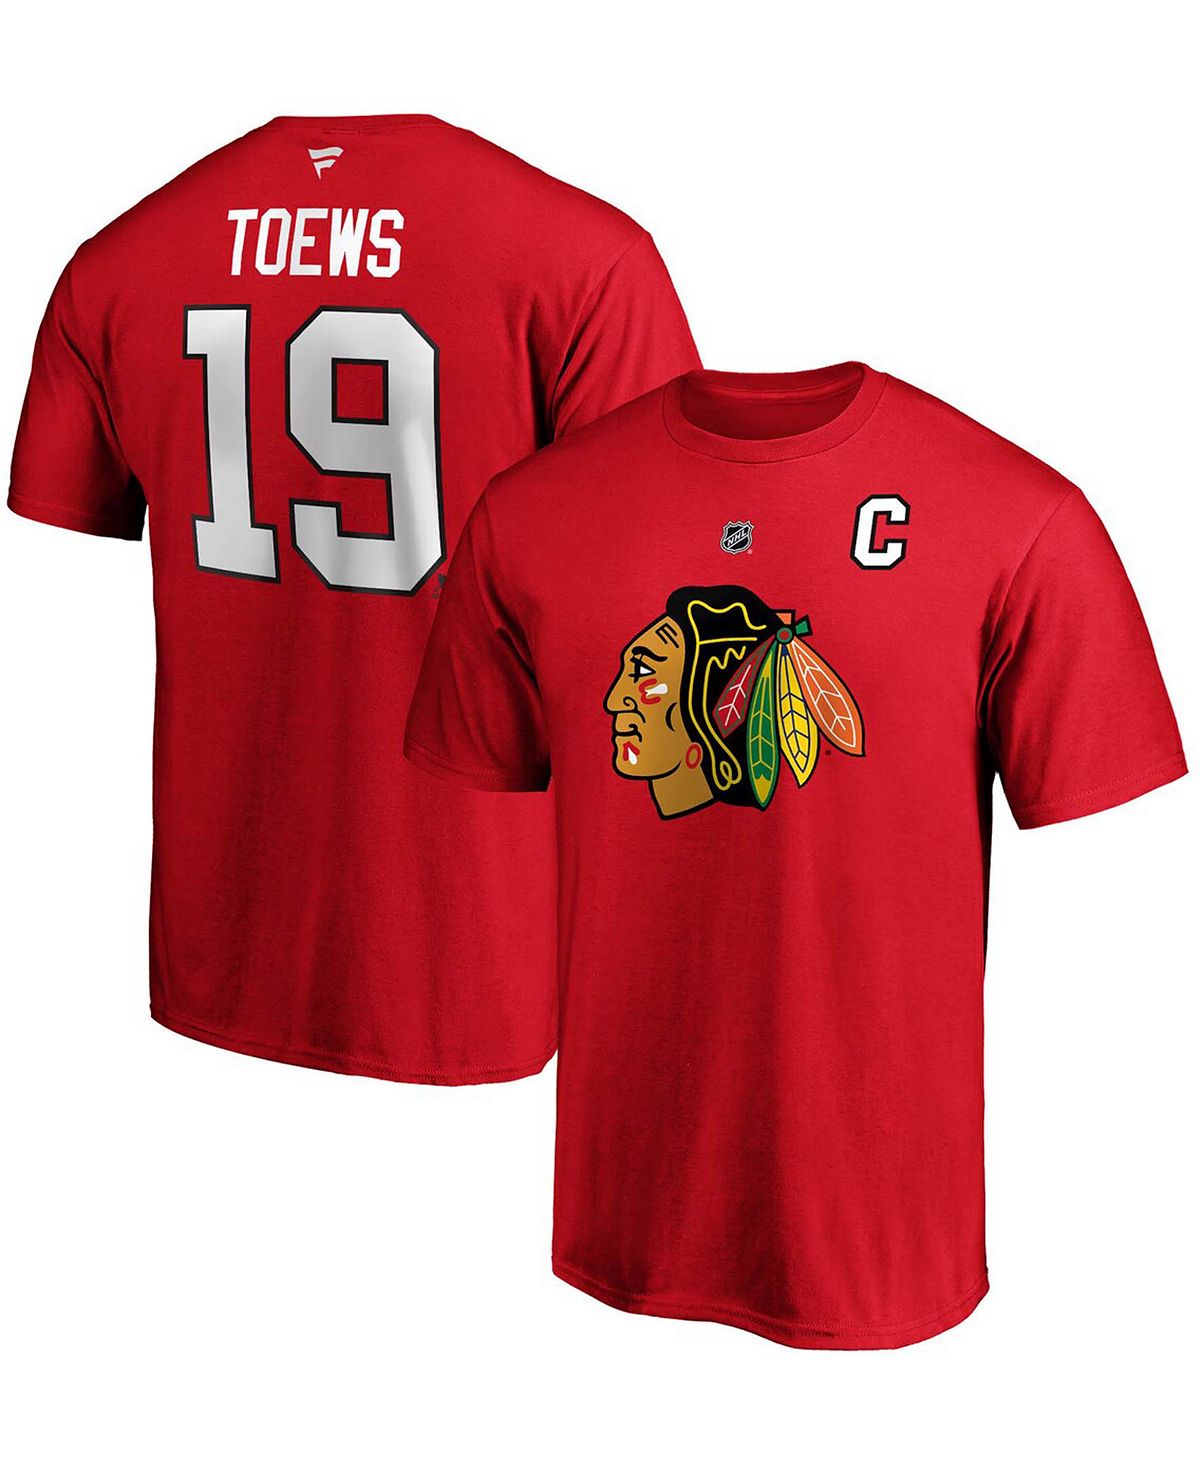 Мужская футболка jonathan toews red chicago blackhawks team с аутентичным названием и номером стека Fanatics, красный фото